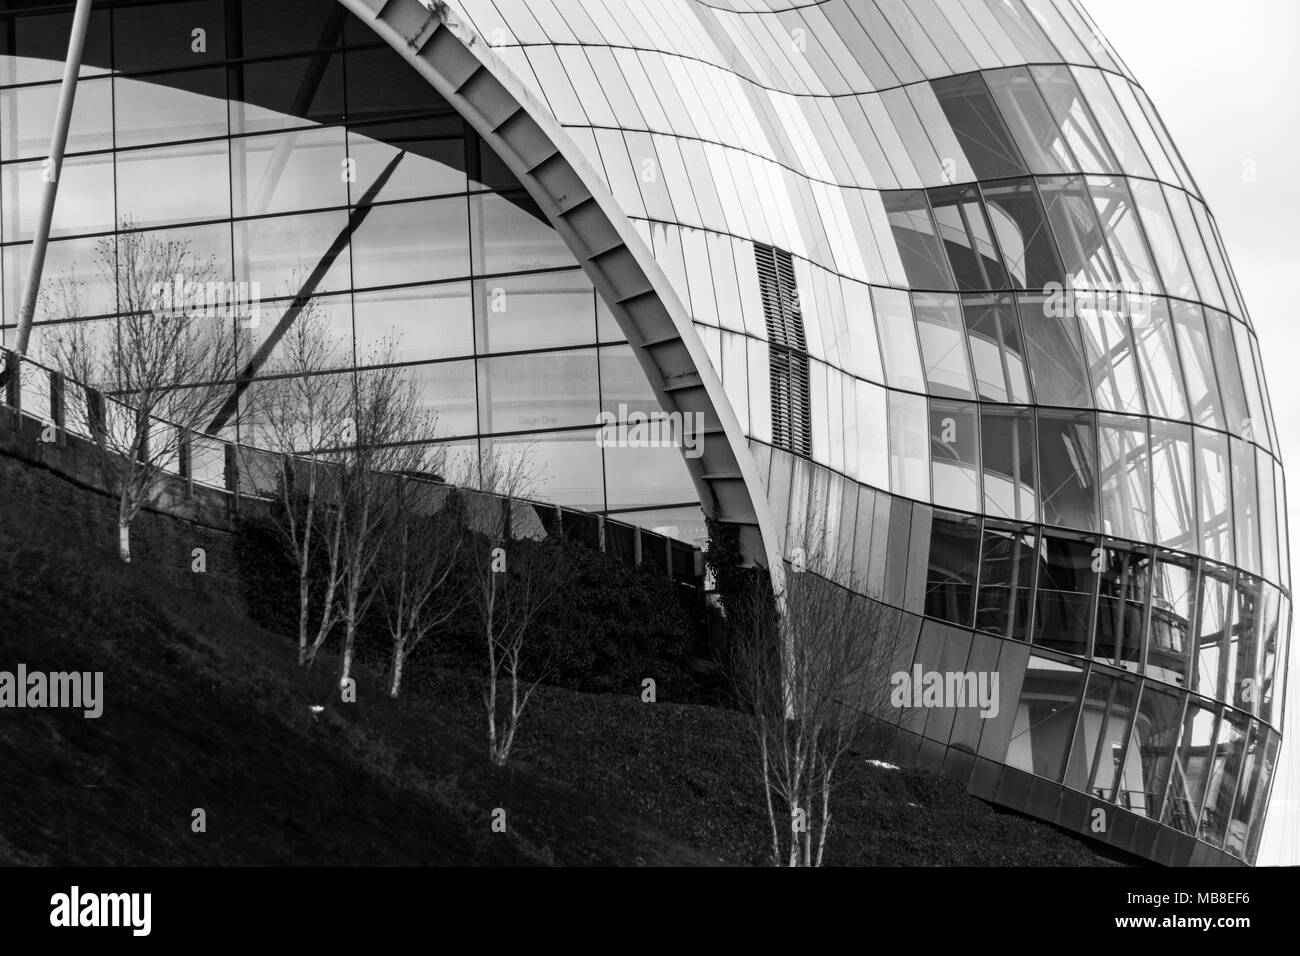 Newcastle, Inghilterra - Marzo 7, 2018: la vista di una sezione del Sage Gateshead. Questo moderno edificio è una casa internazionale per la musica. Foto Stock